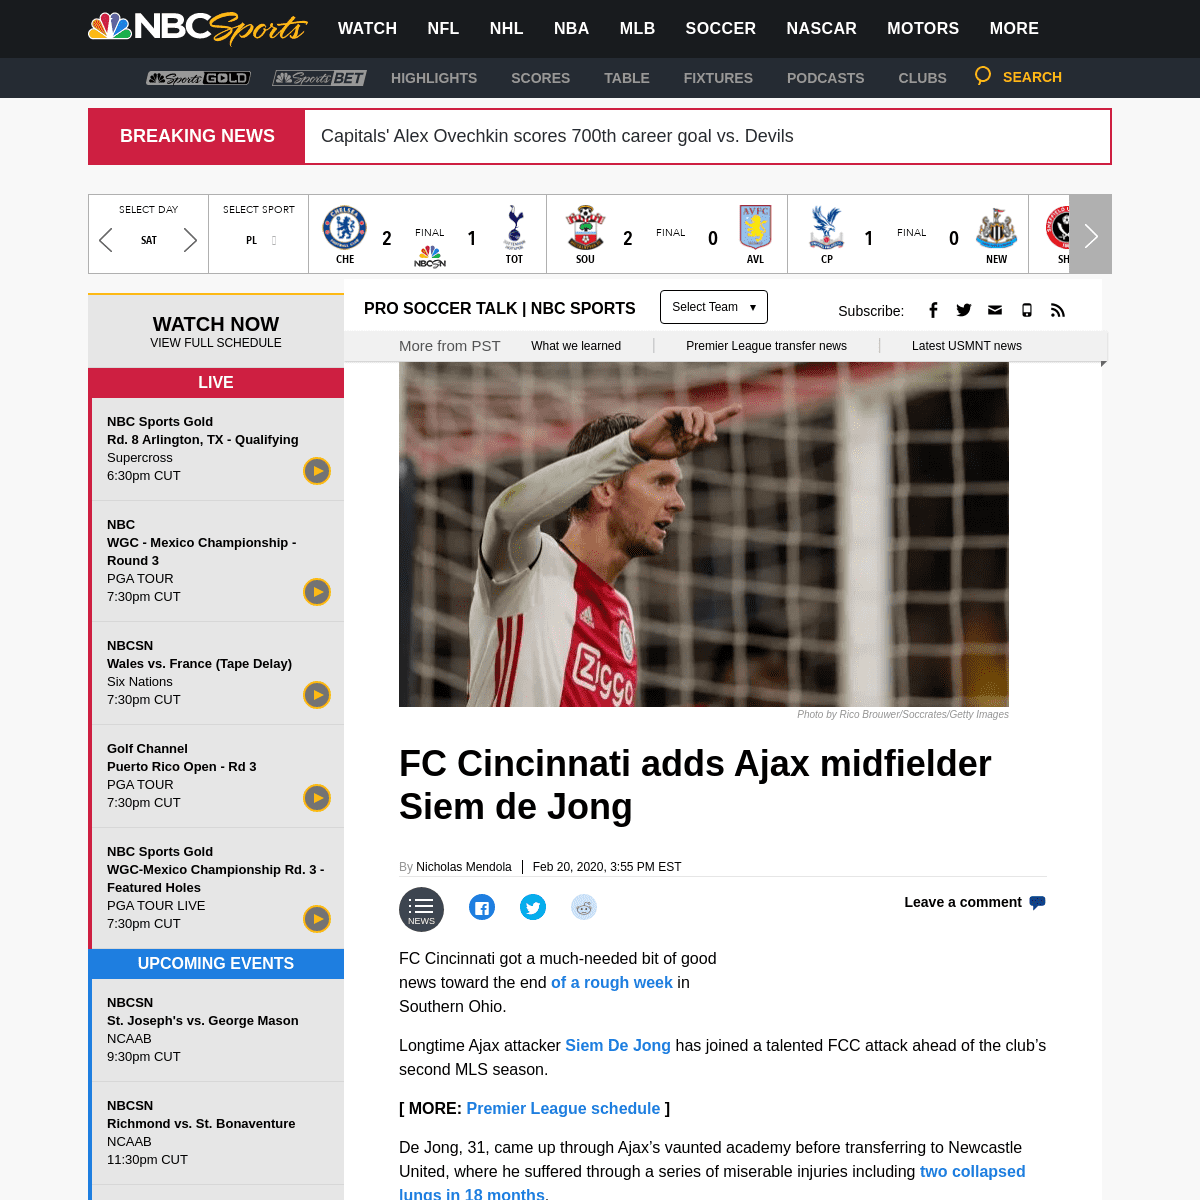 A complete backup of soccer.nbcsports.com/2020/02/20/fc-cincinnati-mls-transfer-news-siem-de-jong-major-league-soccer/